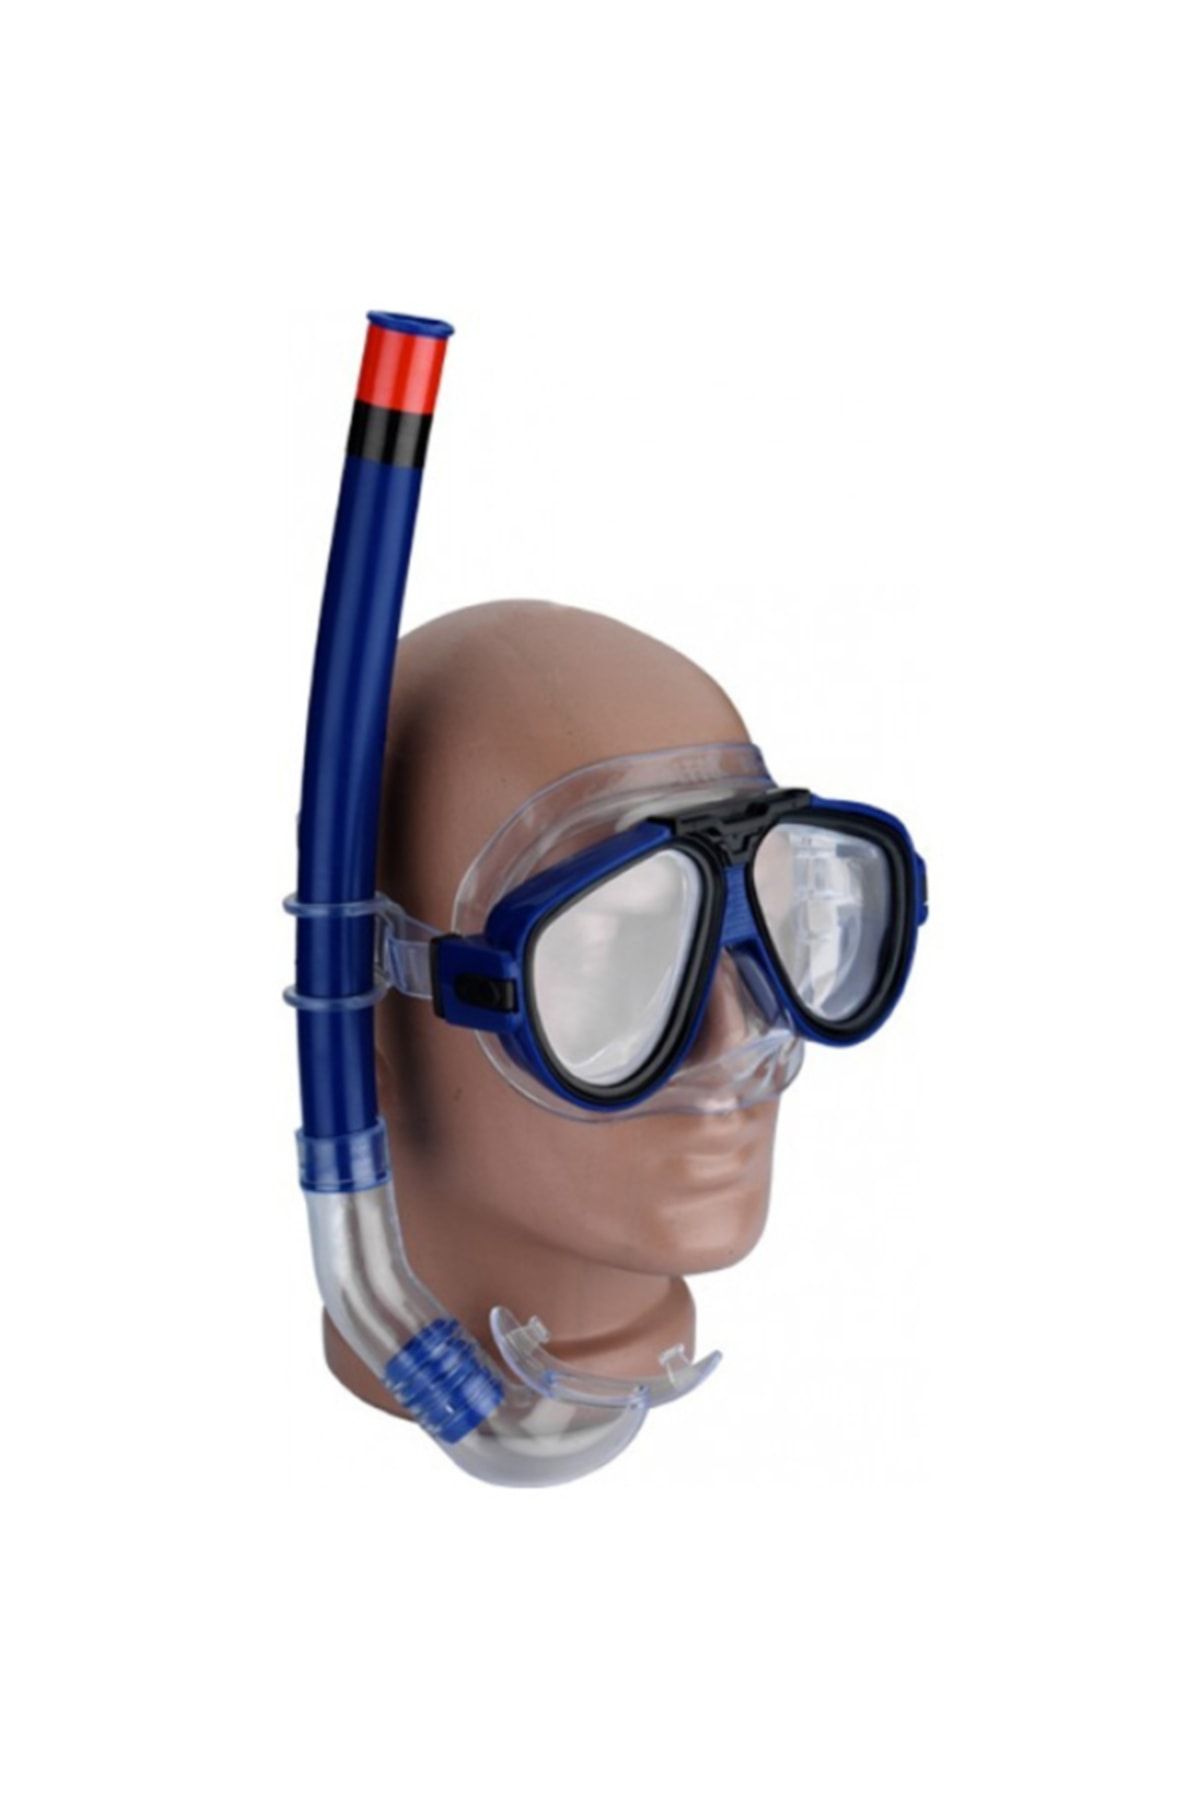 Genel Markalar Sn-100 Şnorkel Yüzücü Gözlüğü Set